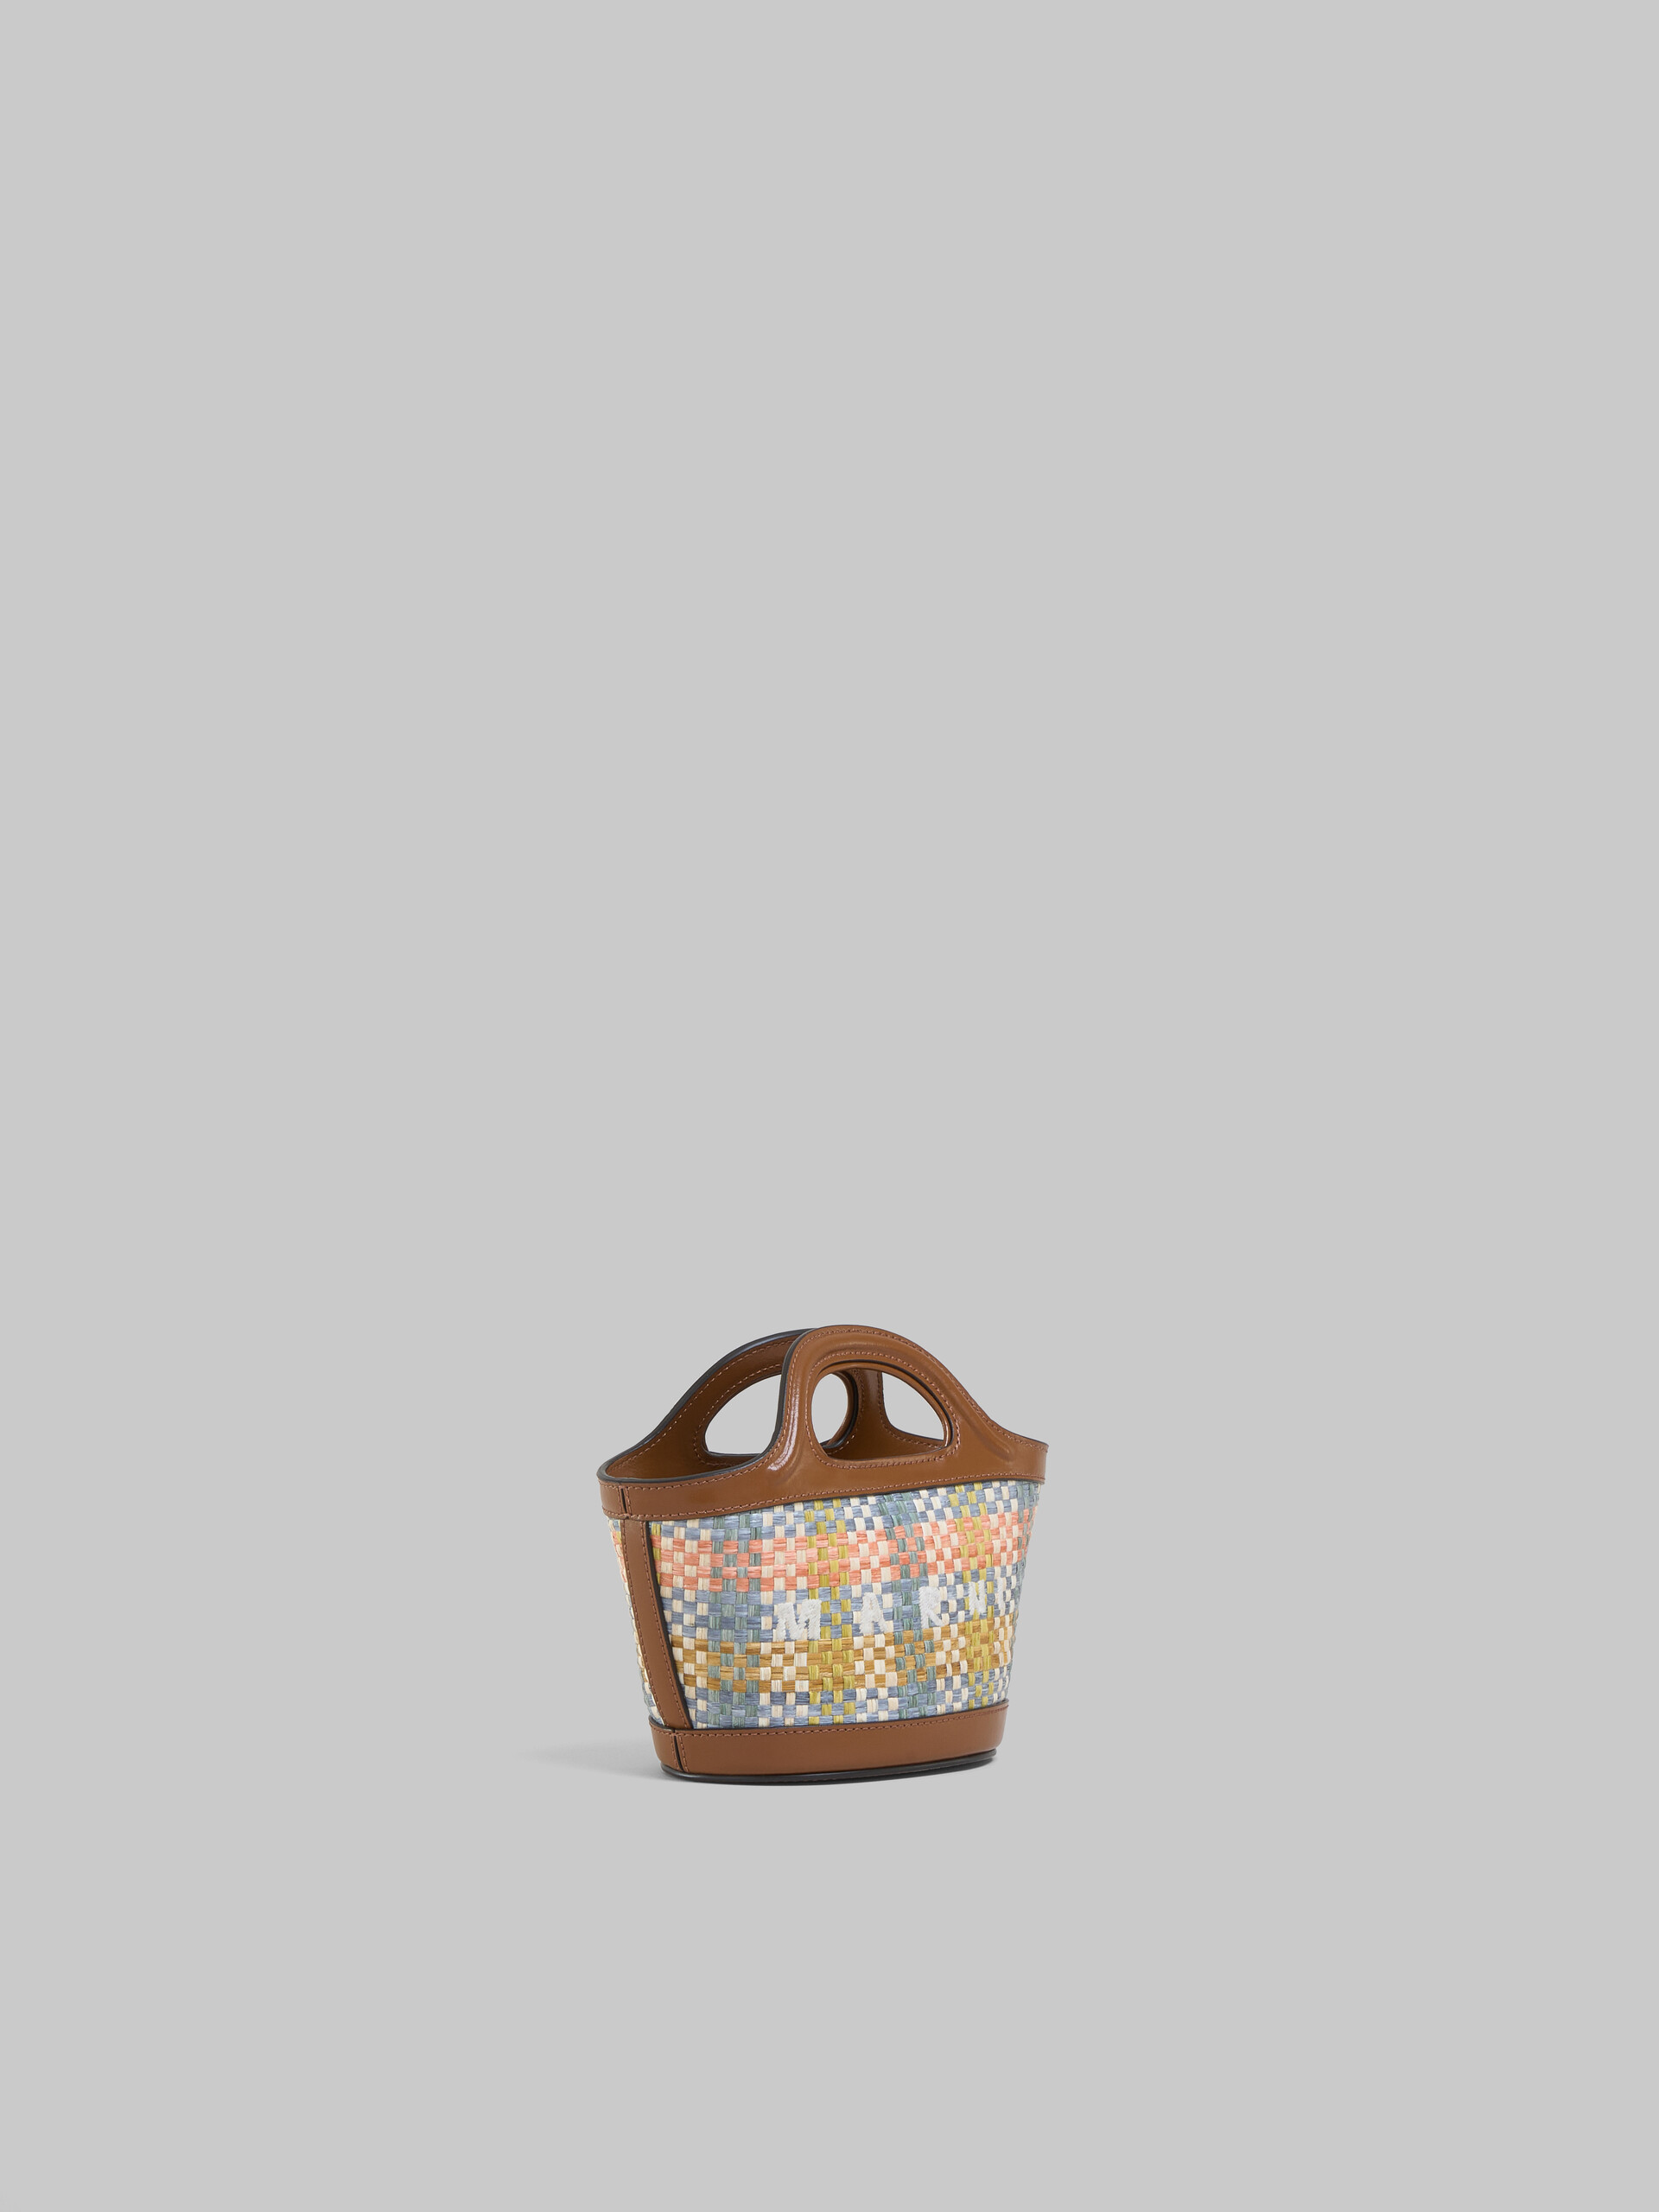 Brown leather and raffia-effect fabric Tropicalia Micro Bag - Handbag - Image 6